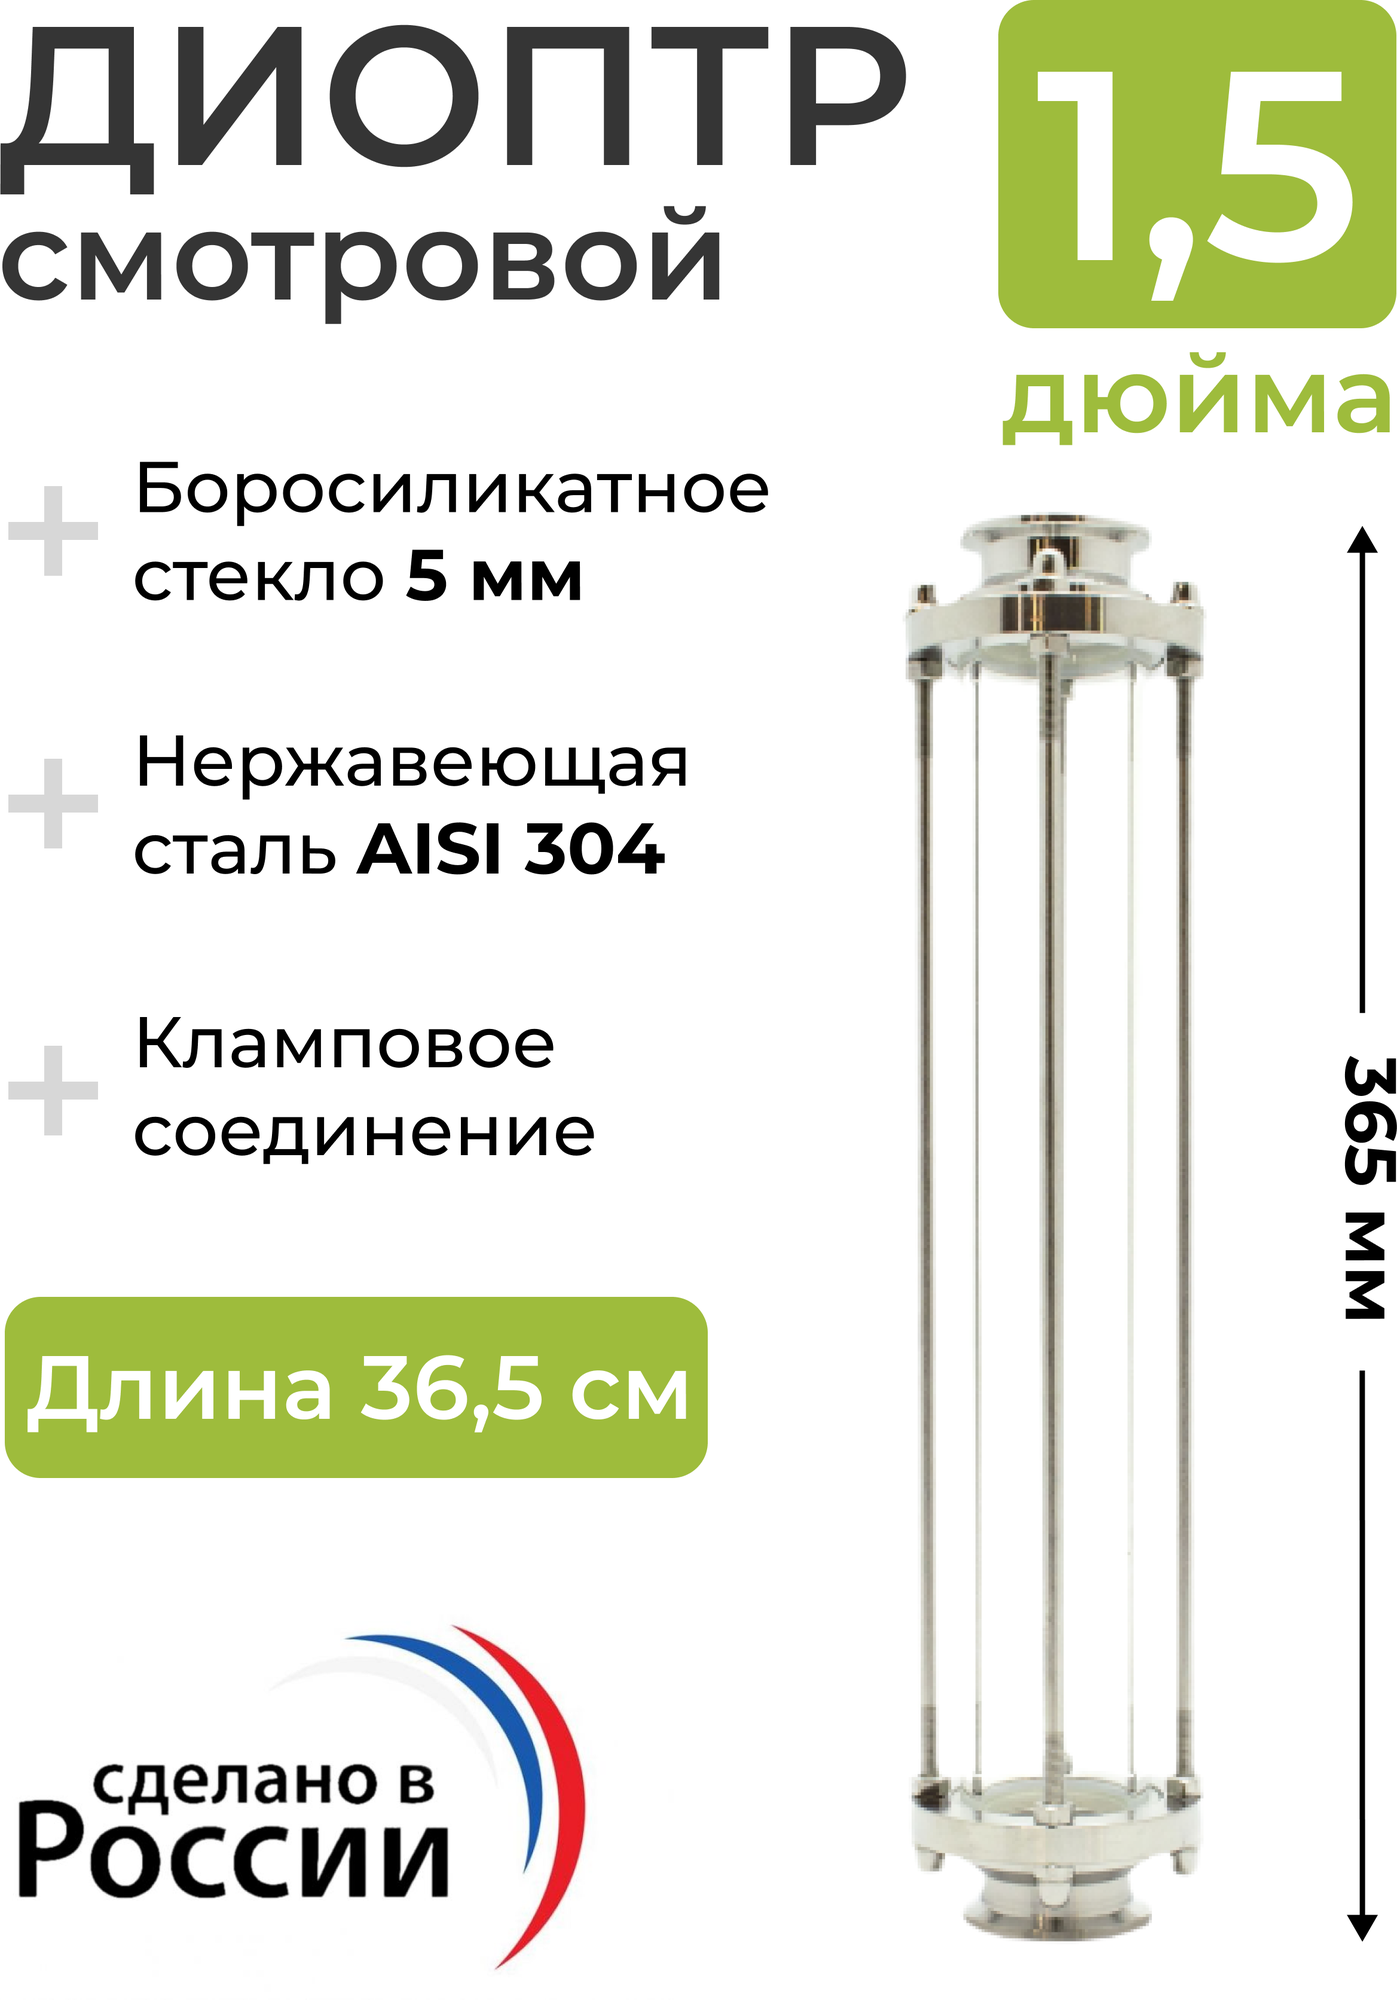 Диоптр (удлиненный) смотровой под кламп 1.5 дюйма, 36,5 см, для самогонного аппарата